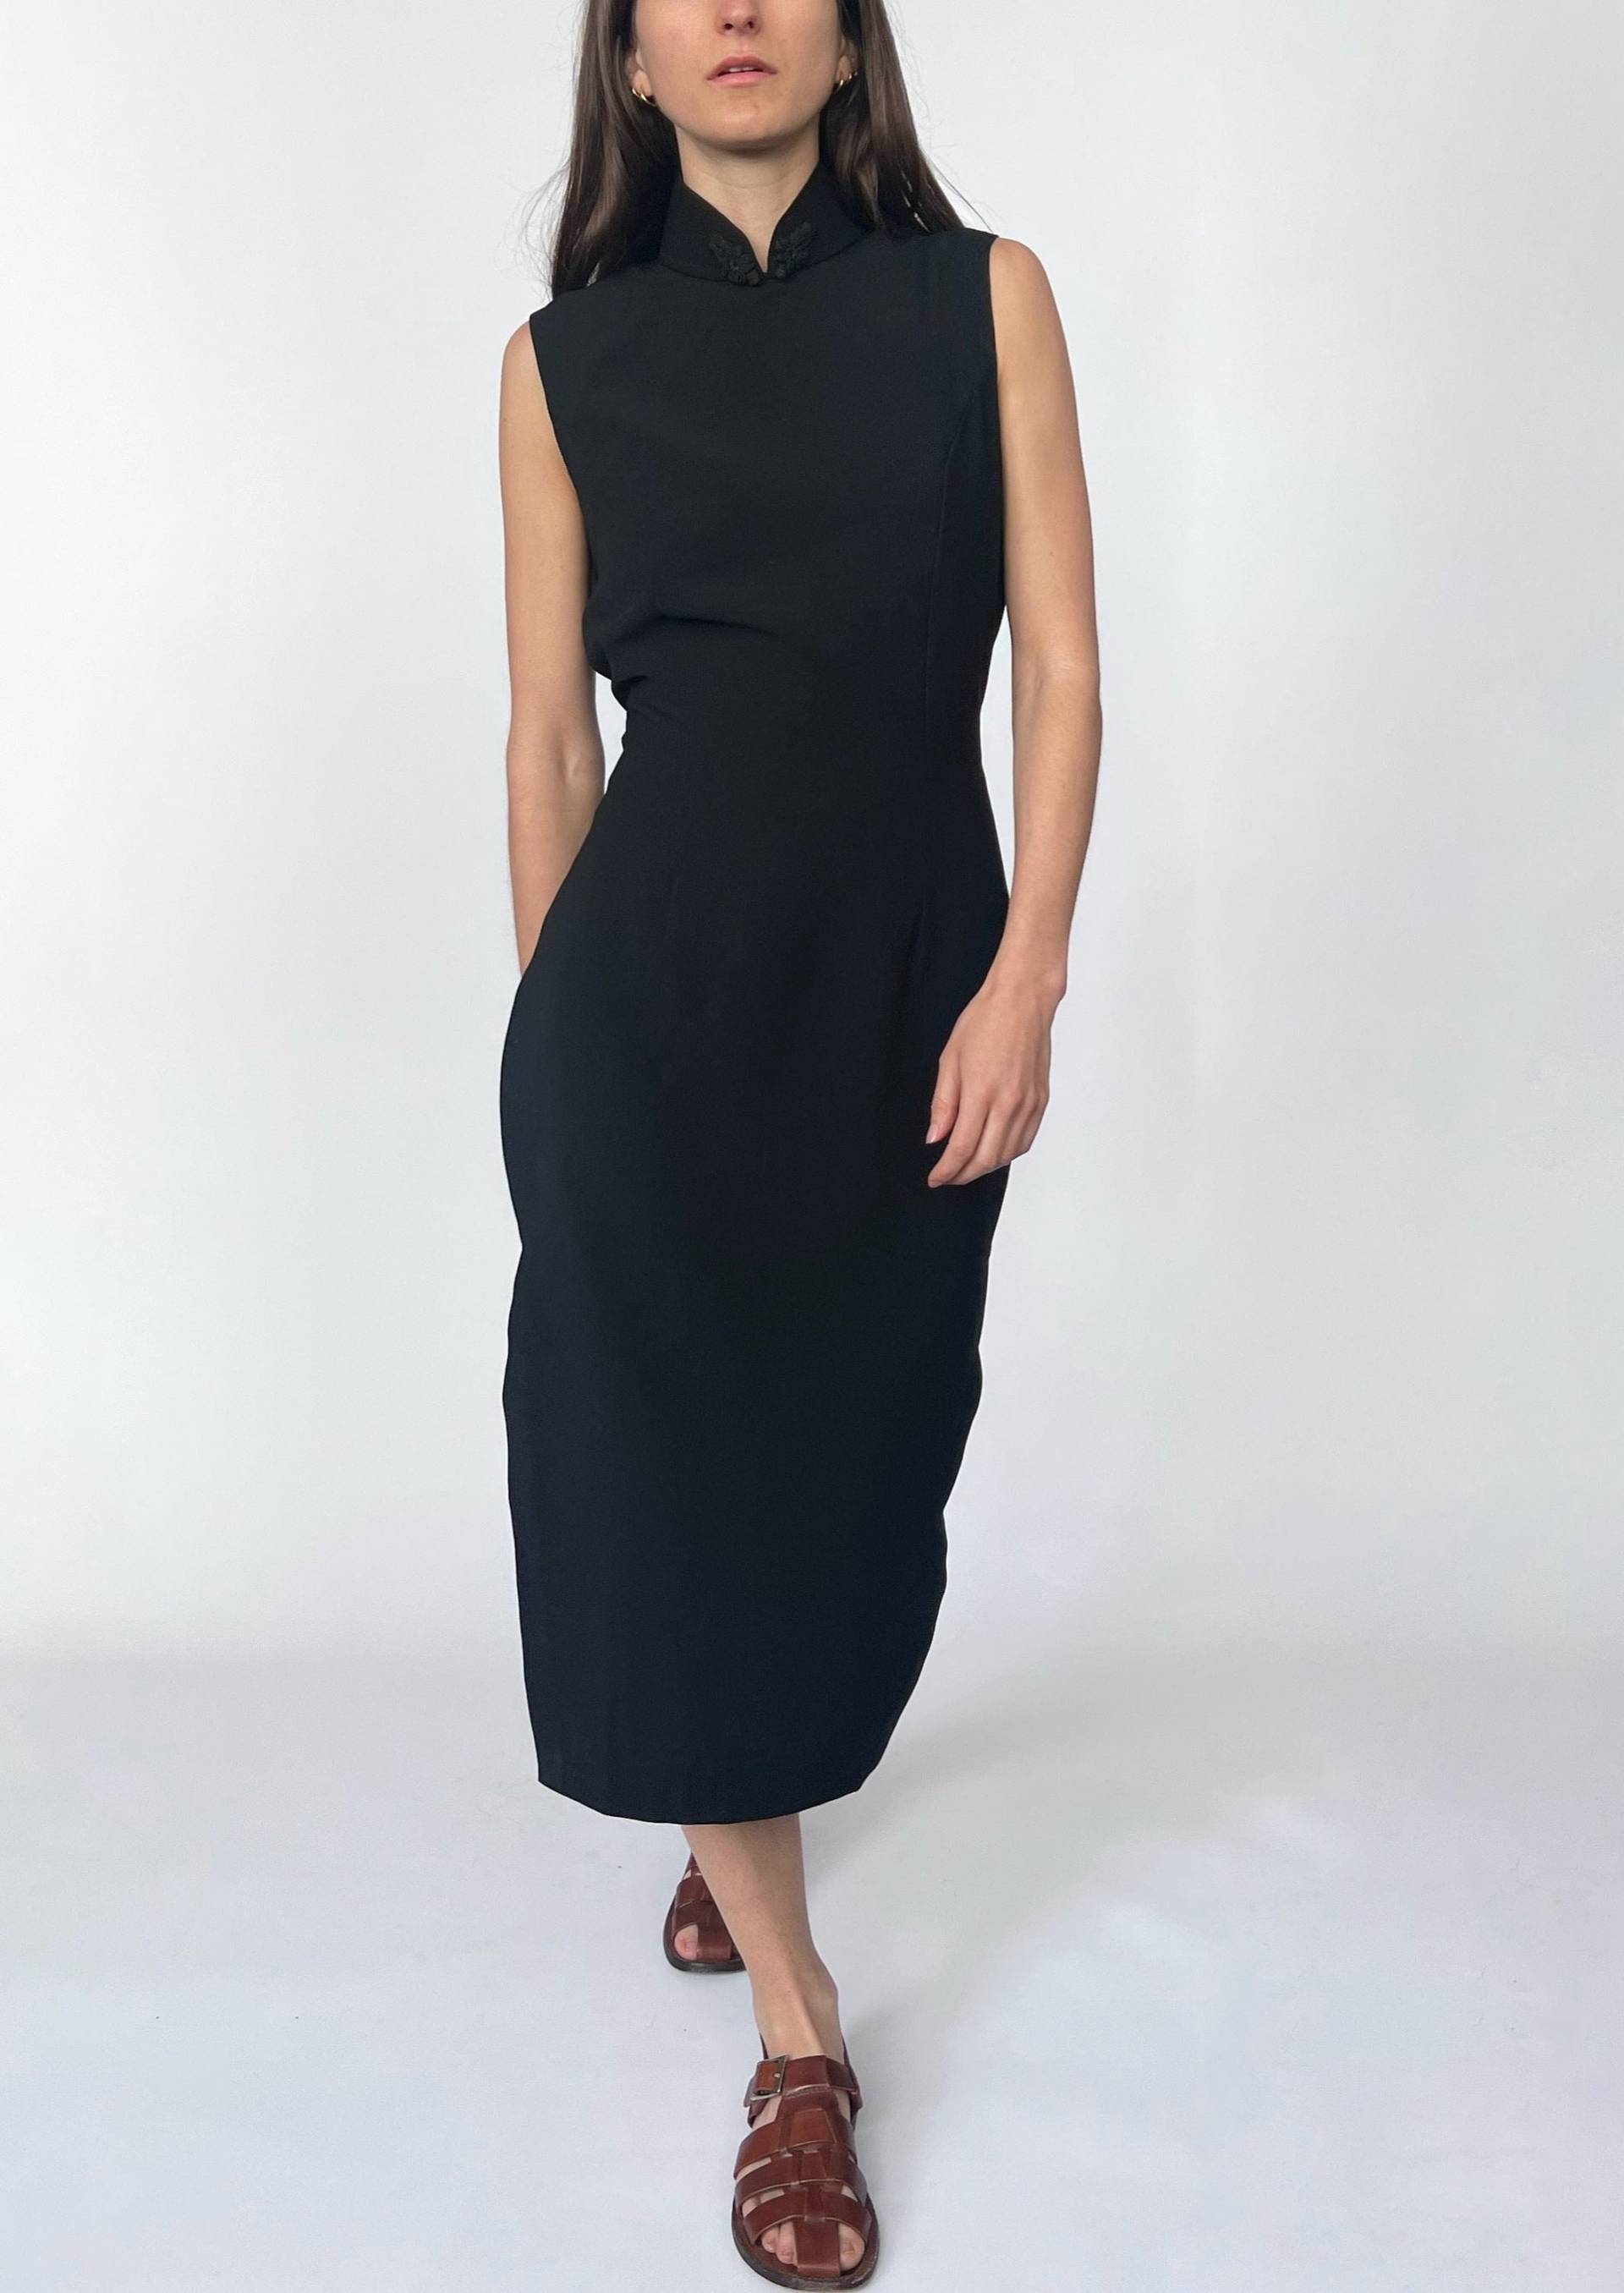 High Neck Black Fitted Dress M, Tailliertes Midikleid, Schwarzes Stehkragenkleid von ReformeStudios